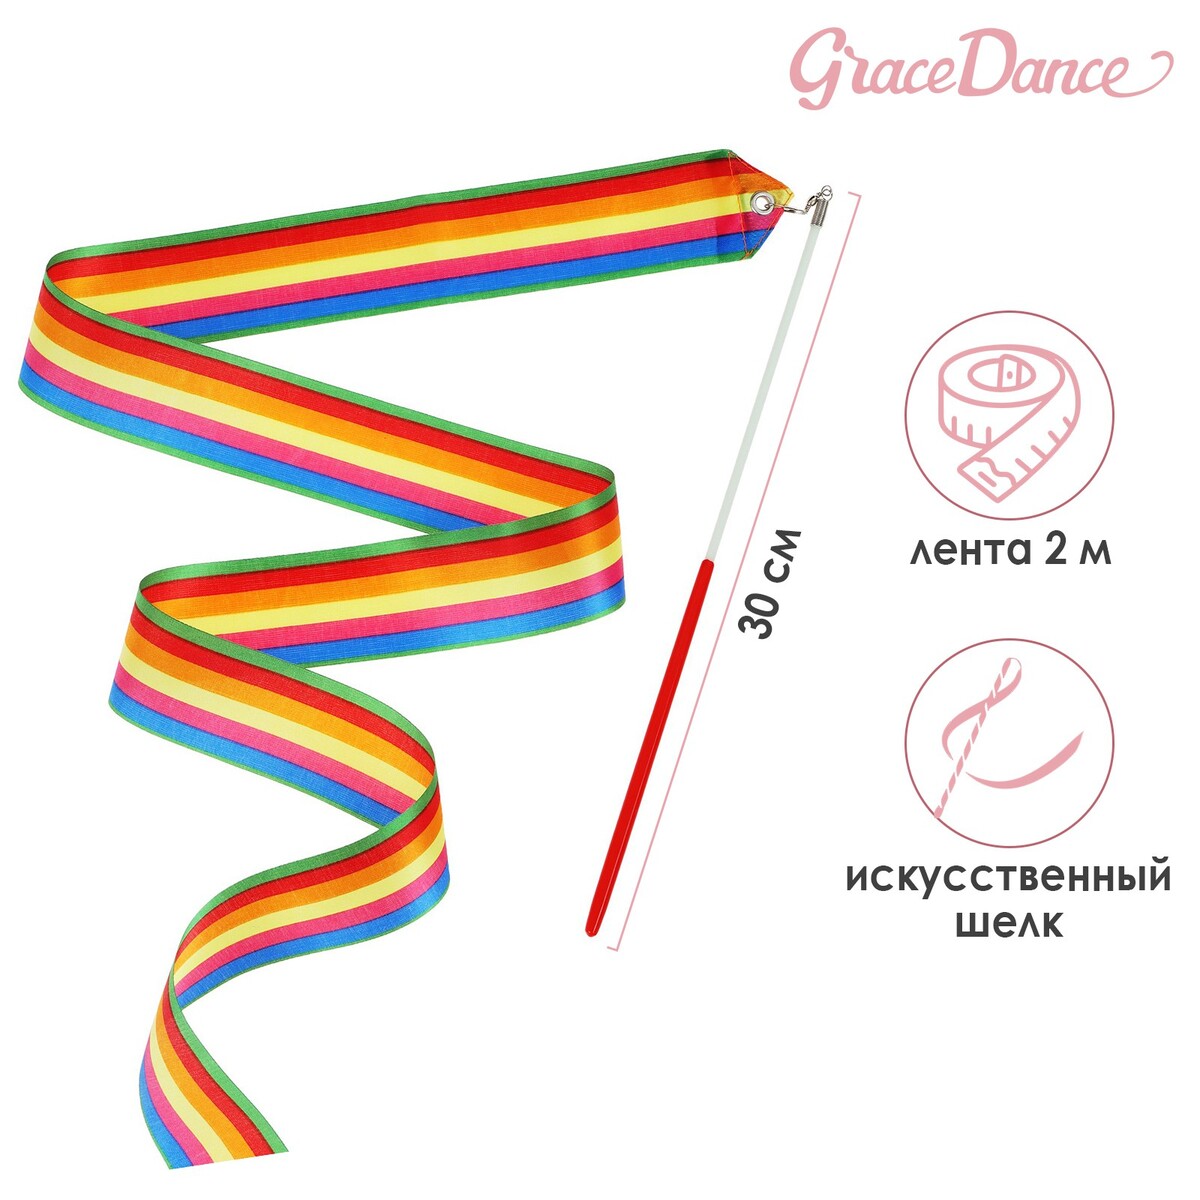 Лента для художественной гимнастики с палочкой grace dance, 2 м, цвет радуга трос лента буксировочный 12 т 4 5 м 2 крюка чехол